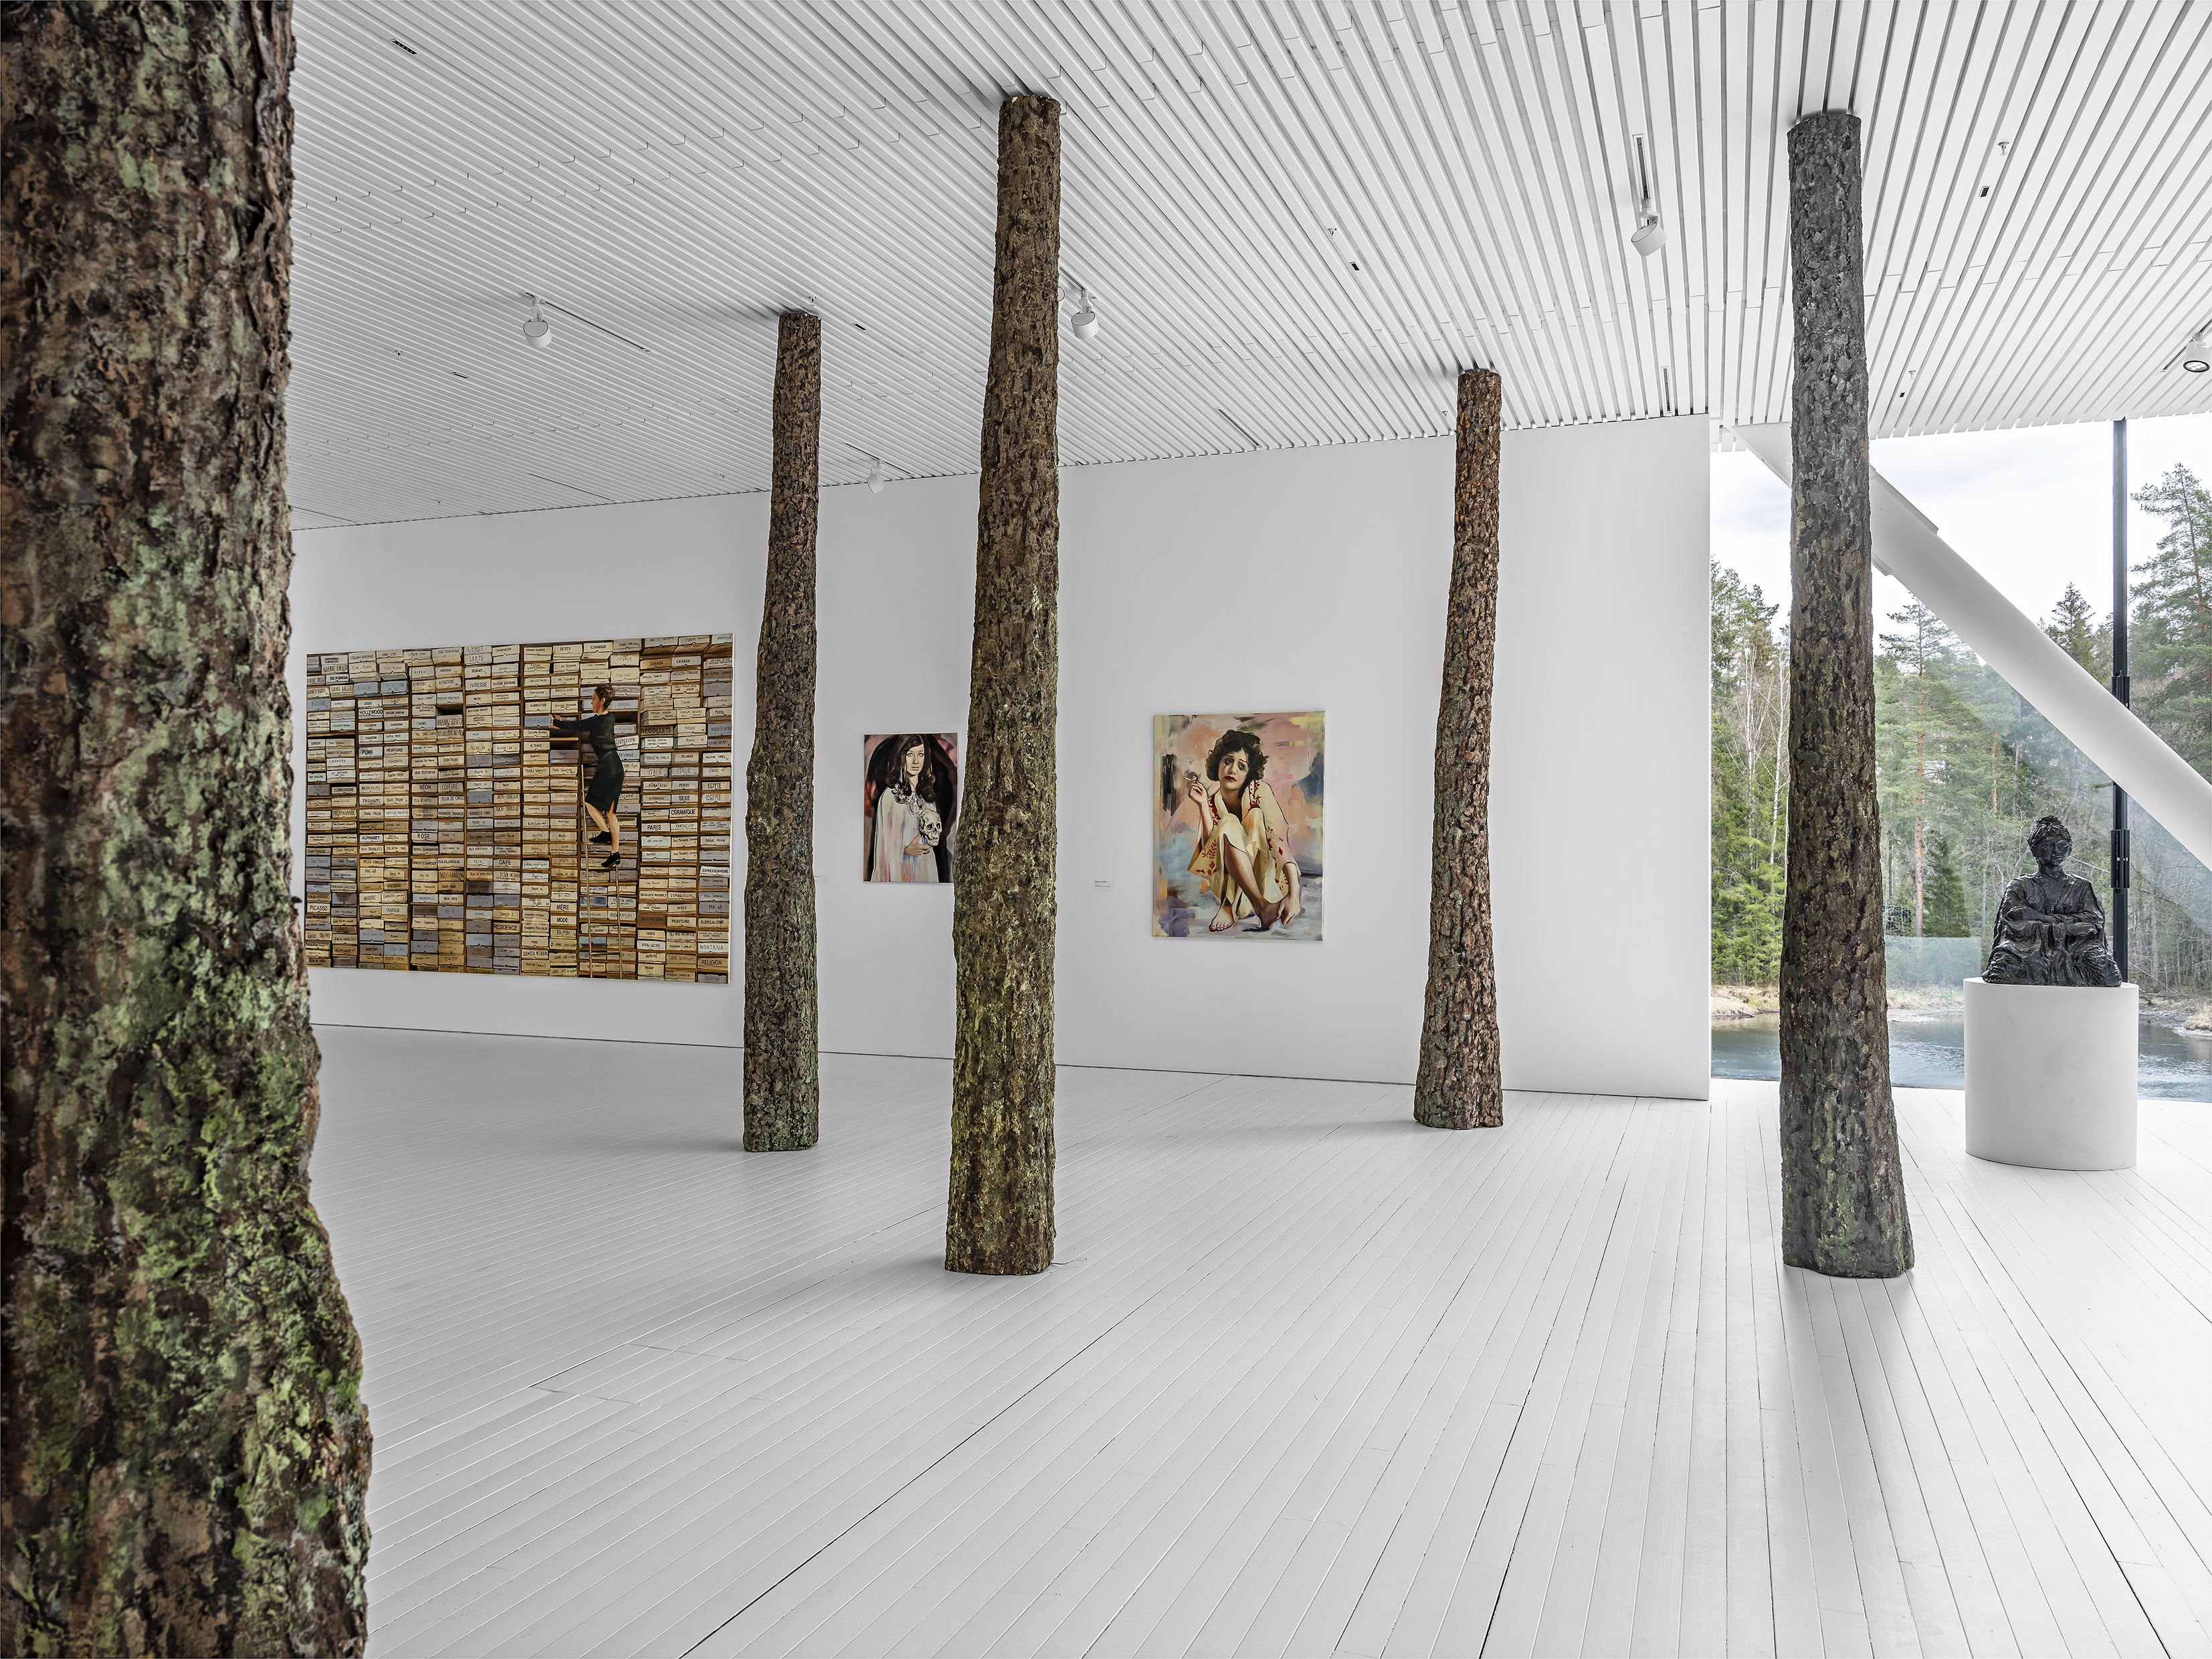 Taidenäyttelyn huoneessa kolme taulua seinällä. Salissa viisi puunrunkoa lattiasta kattoon.